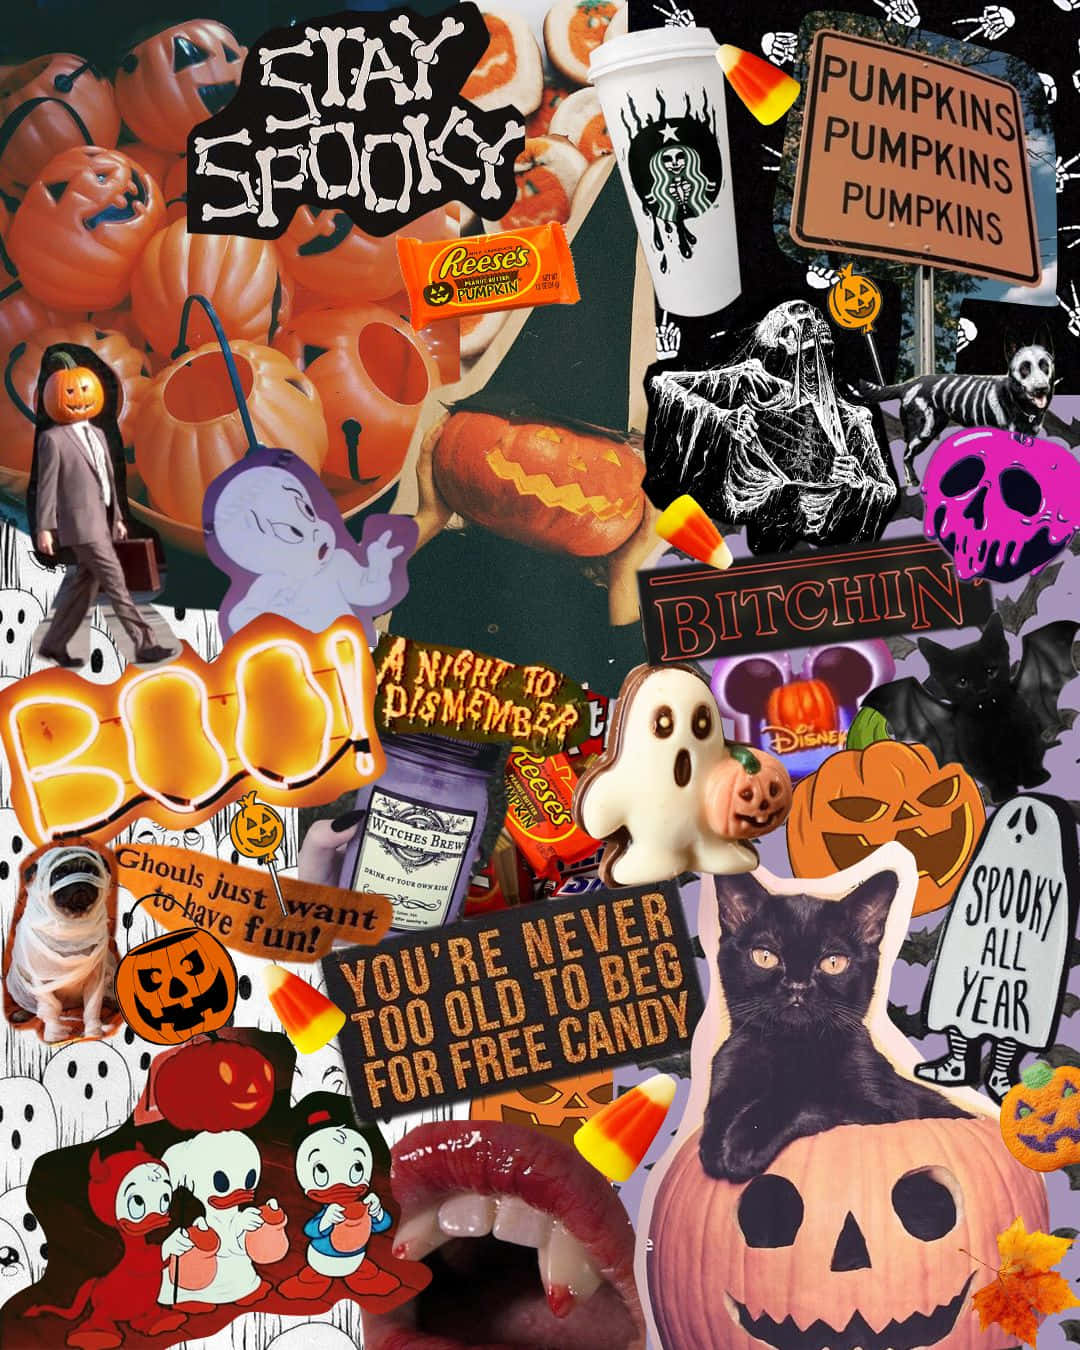 !Få skræmmende i år til Halloween med kreative kostumer og dekorationer! Wallpaper